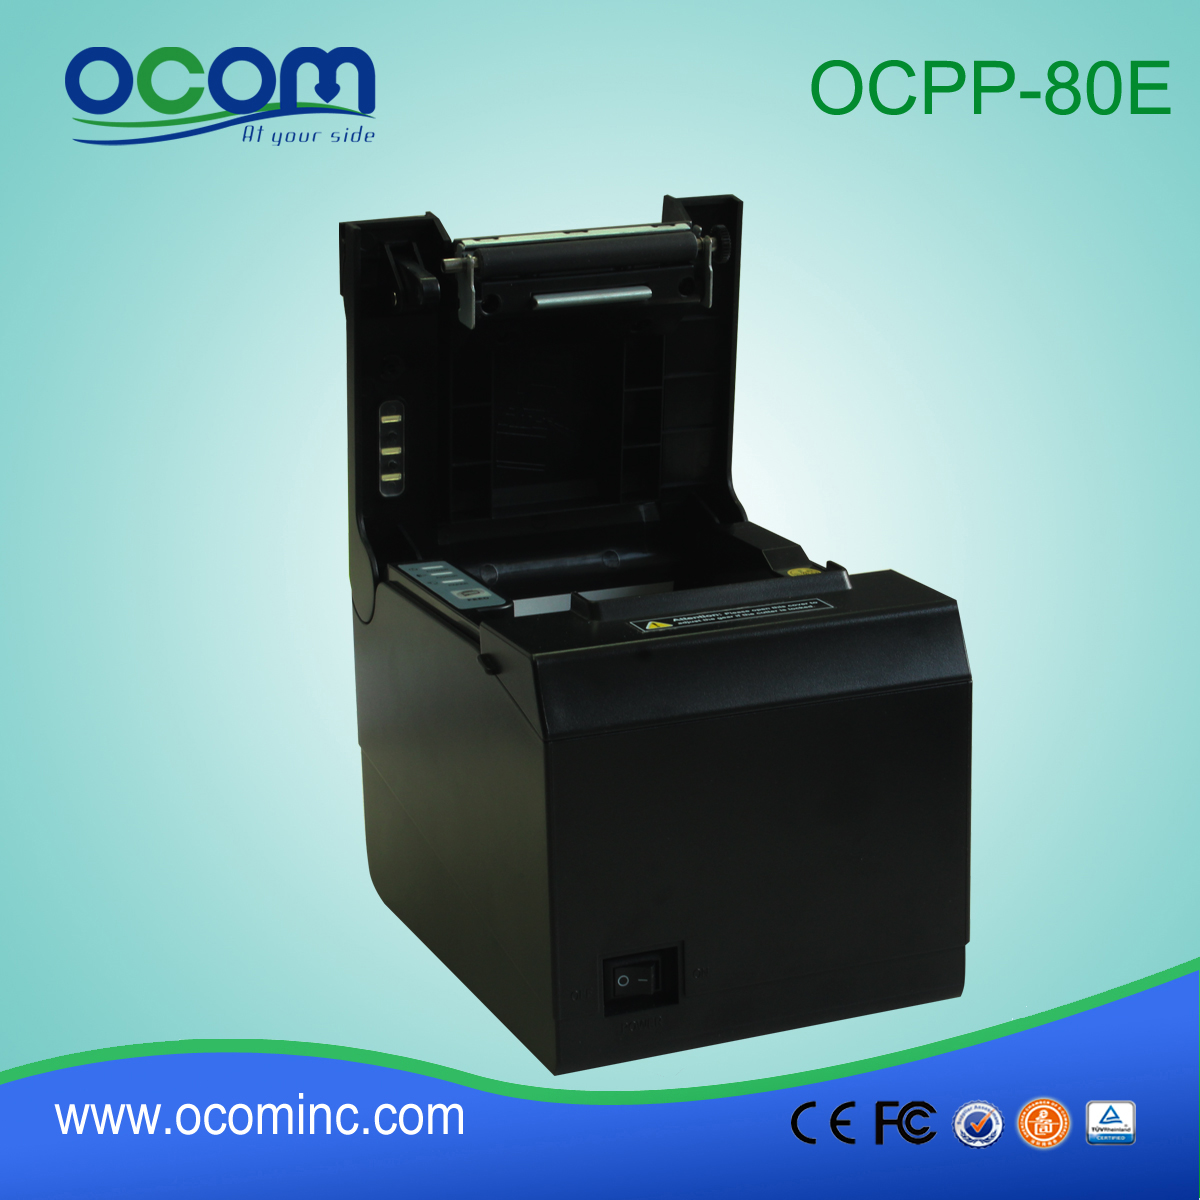 OCPP-80e Factory promotionnel de 80 mm POS imprimante thermique avec le meilleur prix